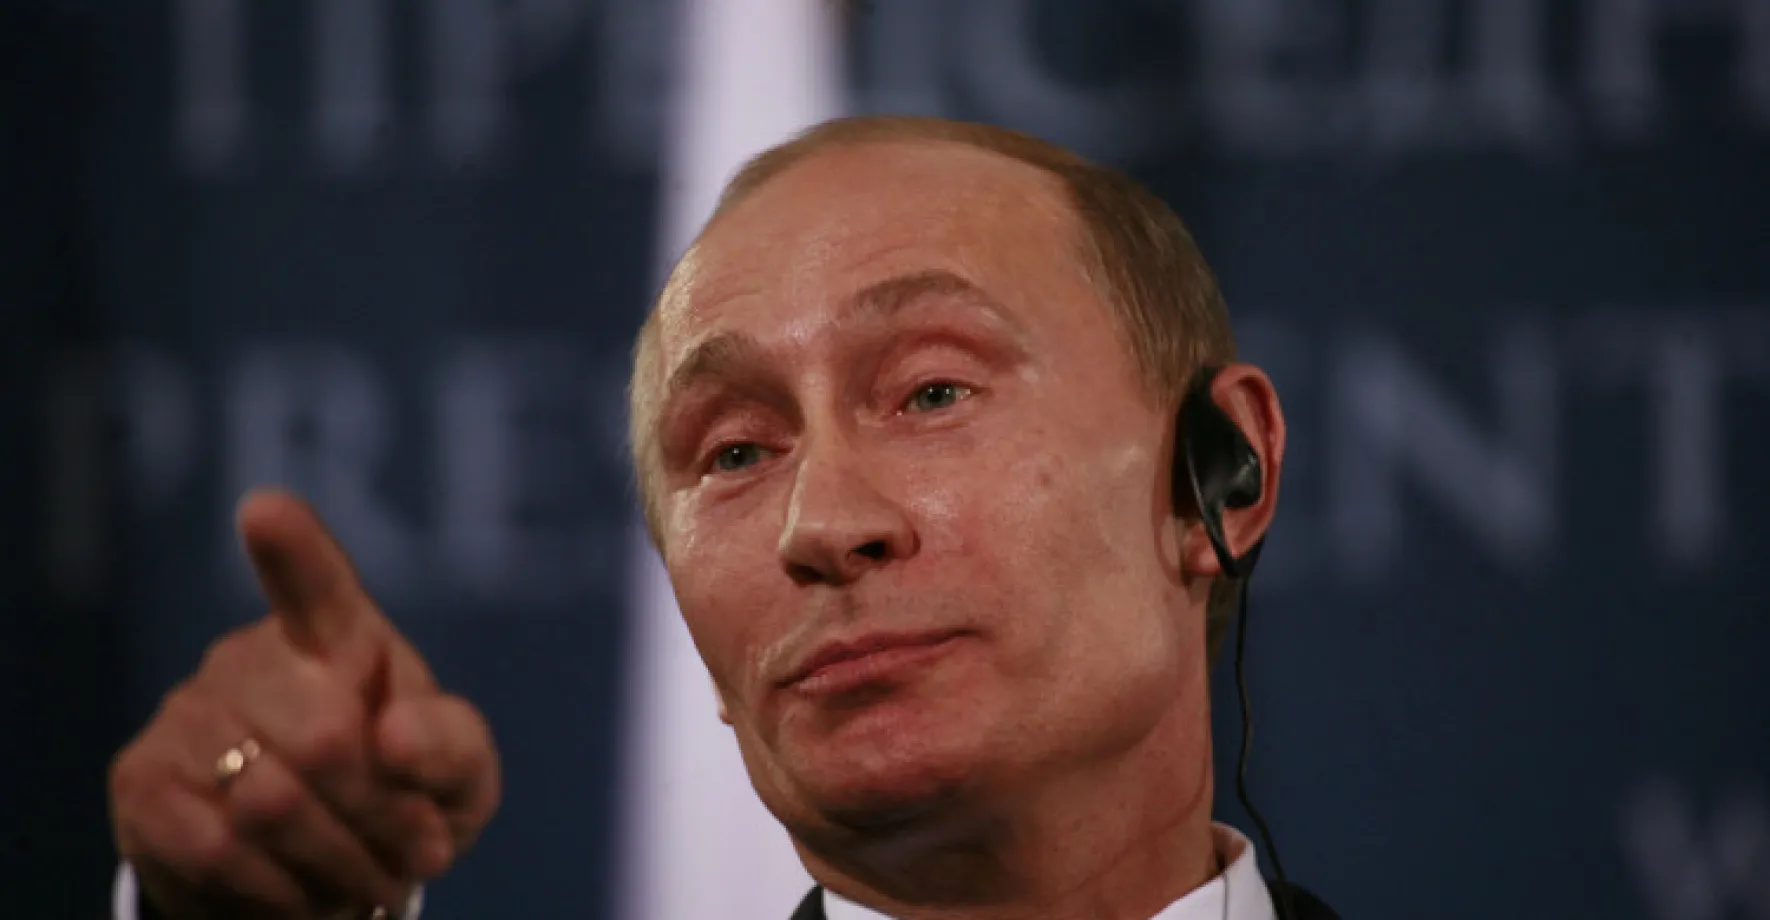 Putin propustil vysoce postavené úředníky. Dali přednost vědě před státem